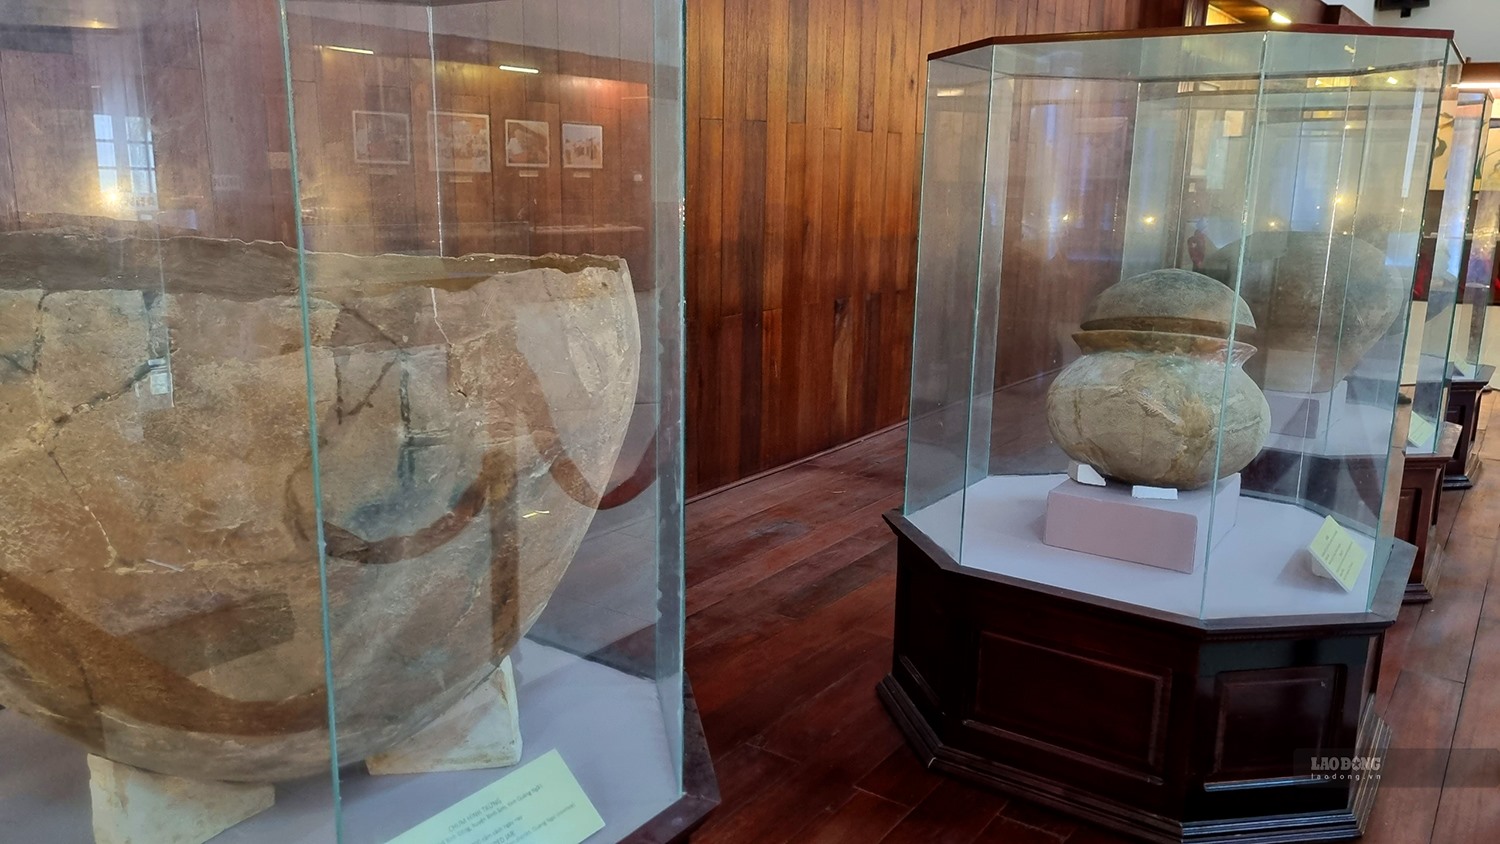 Những chiếc mộ chum, mộ nồi được khai quật, phát hiện ở Quảng Ngãi, là đặc trưng của Văn hóa Sa Huỳnh. Ảnh: Ngọc Viên